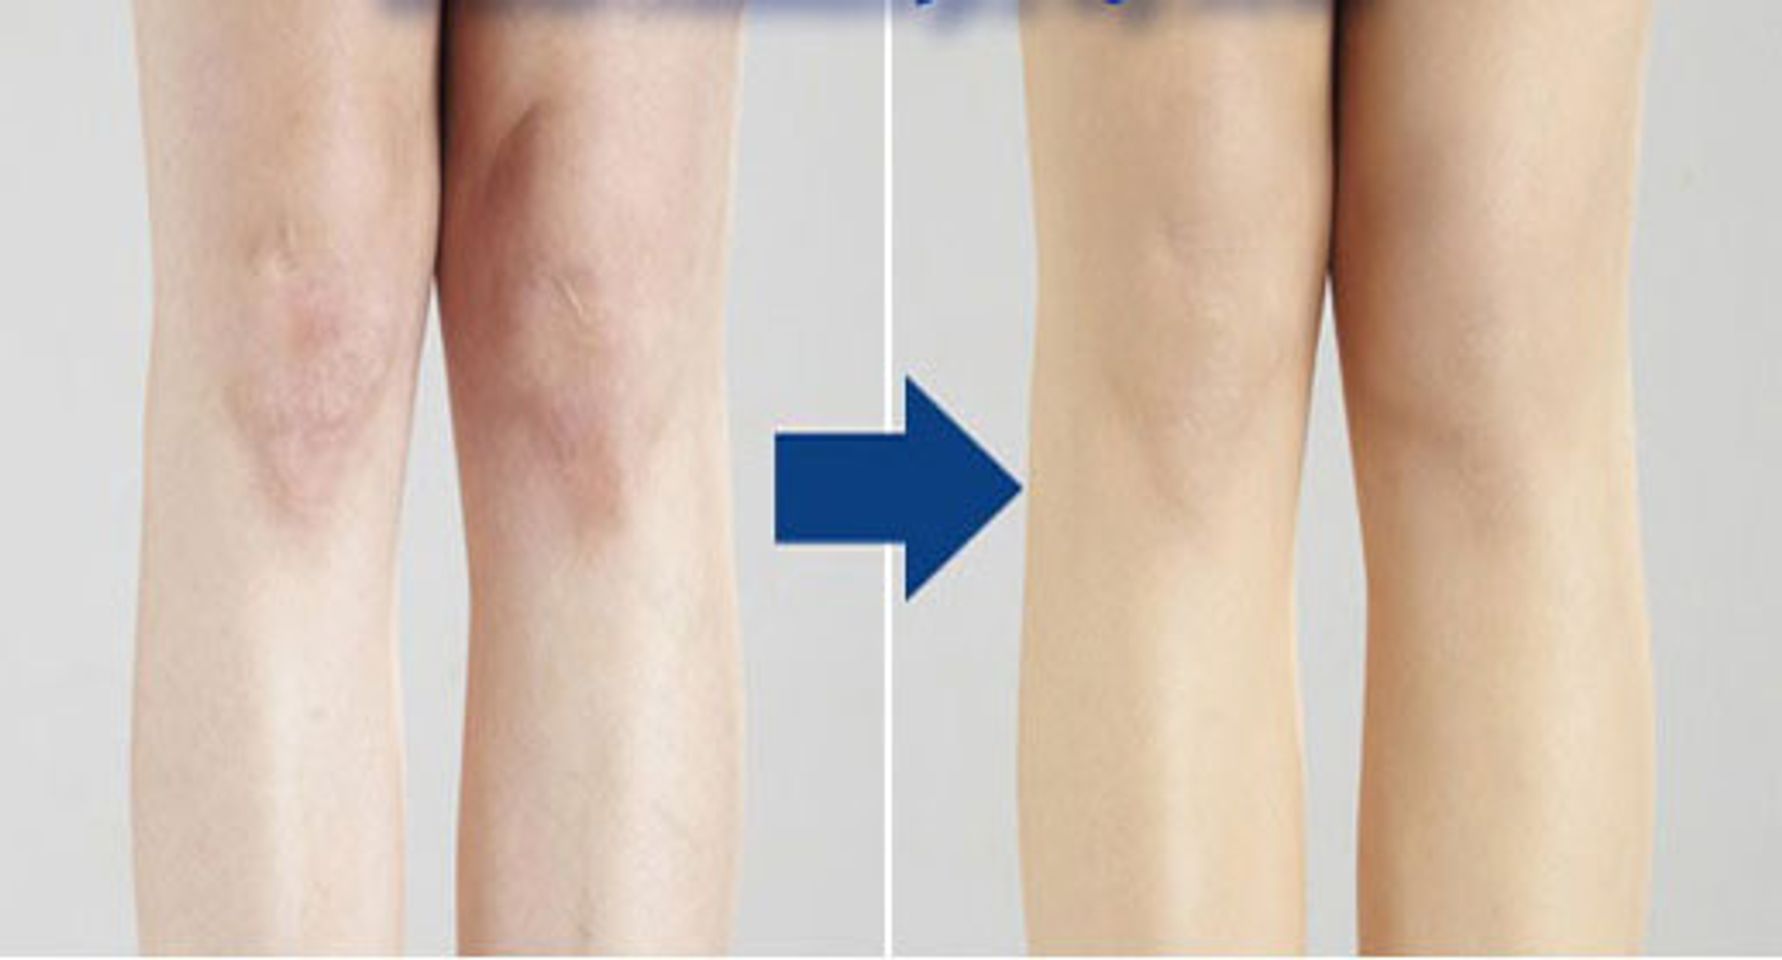 Tất phun Nhật Bản giúp che mờ tới 80% - 90% các khuyết đểm trên đôi chân bạn